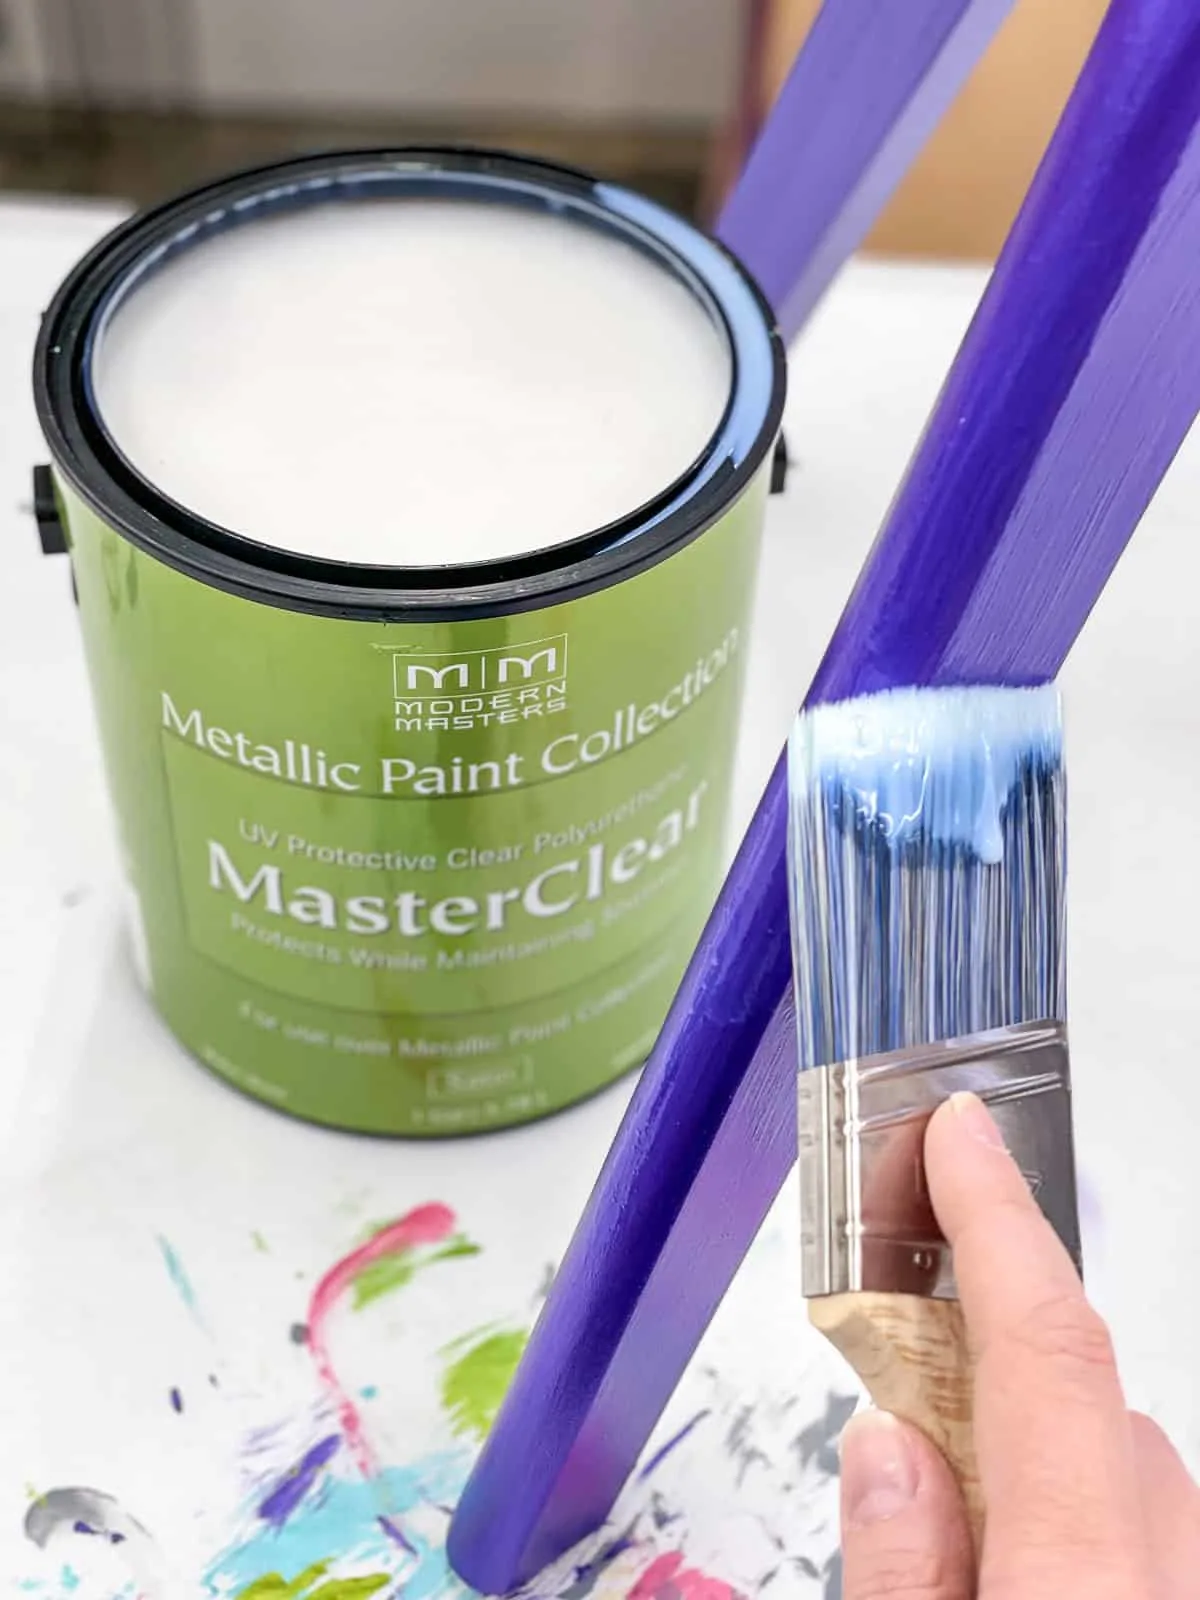 applying top coat over metallic paint